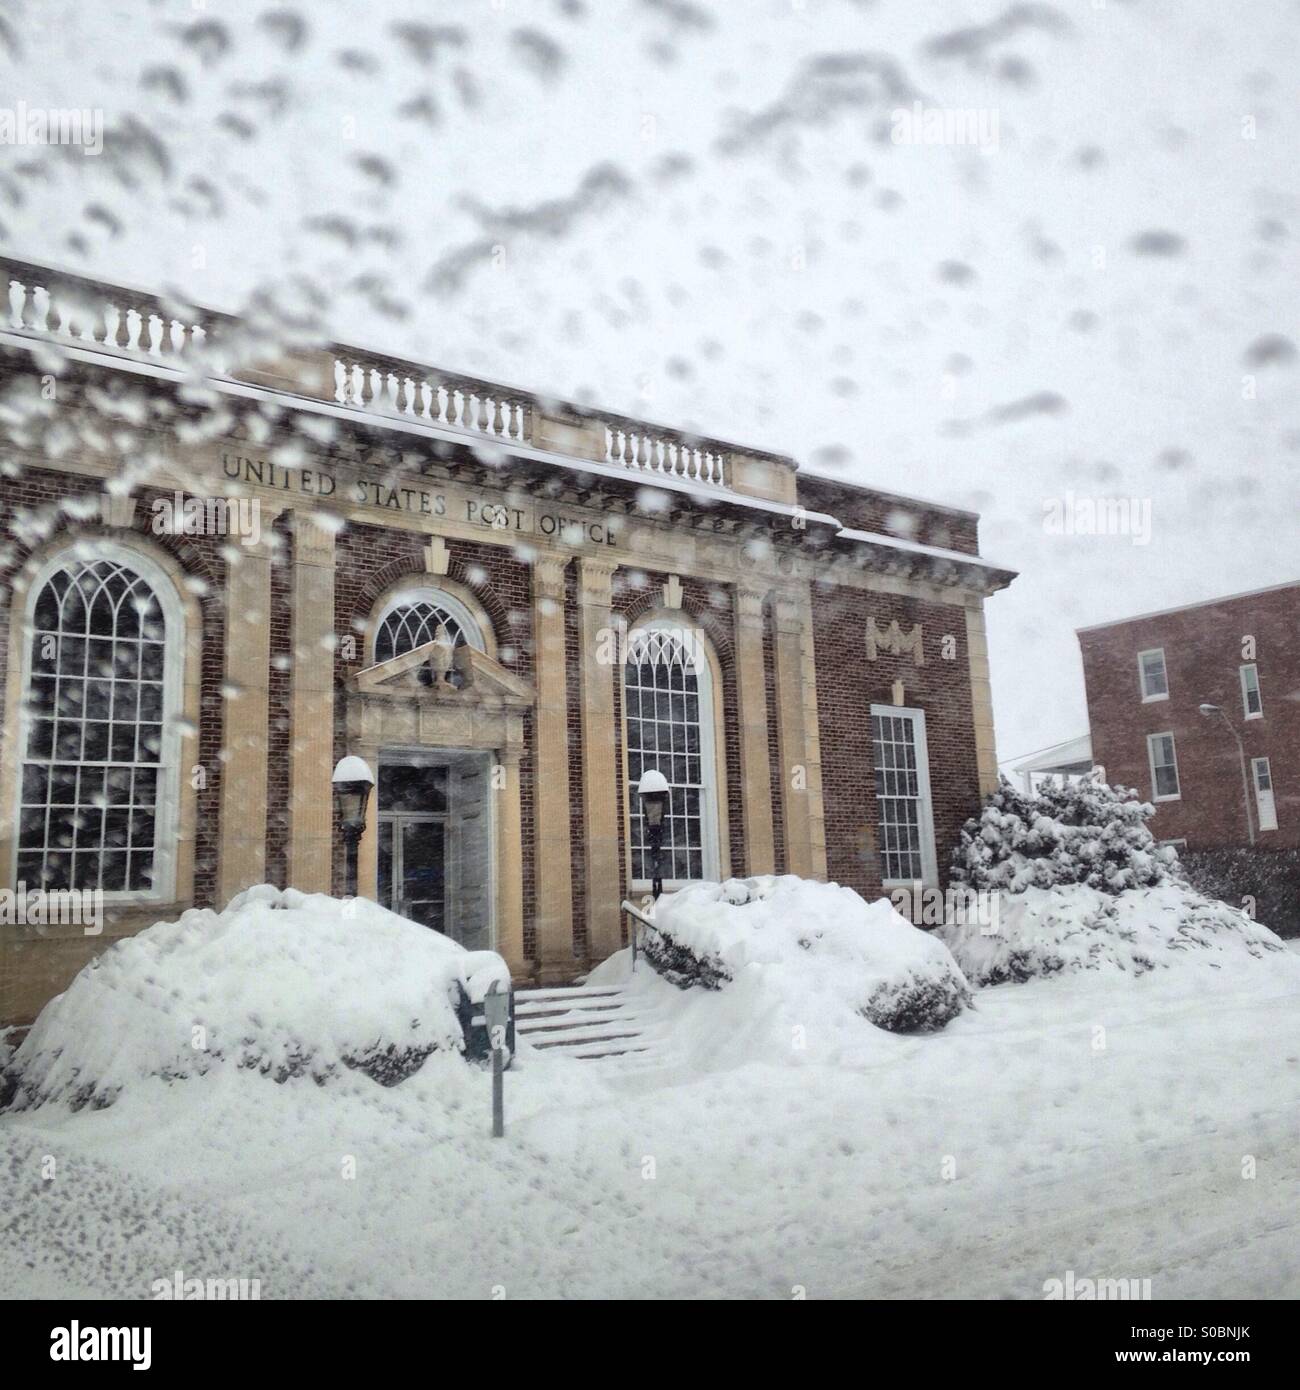 L'ancien bureau de poste de Westminster, Maryland durant une tempête de neige. Banque D'Images